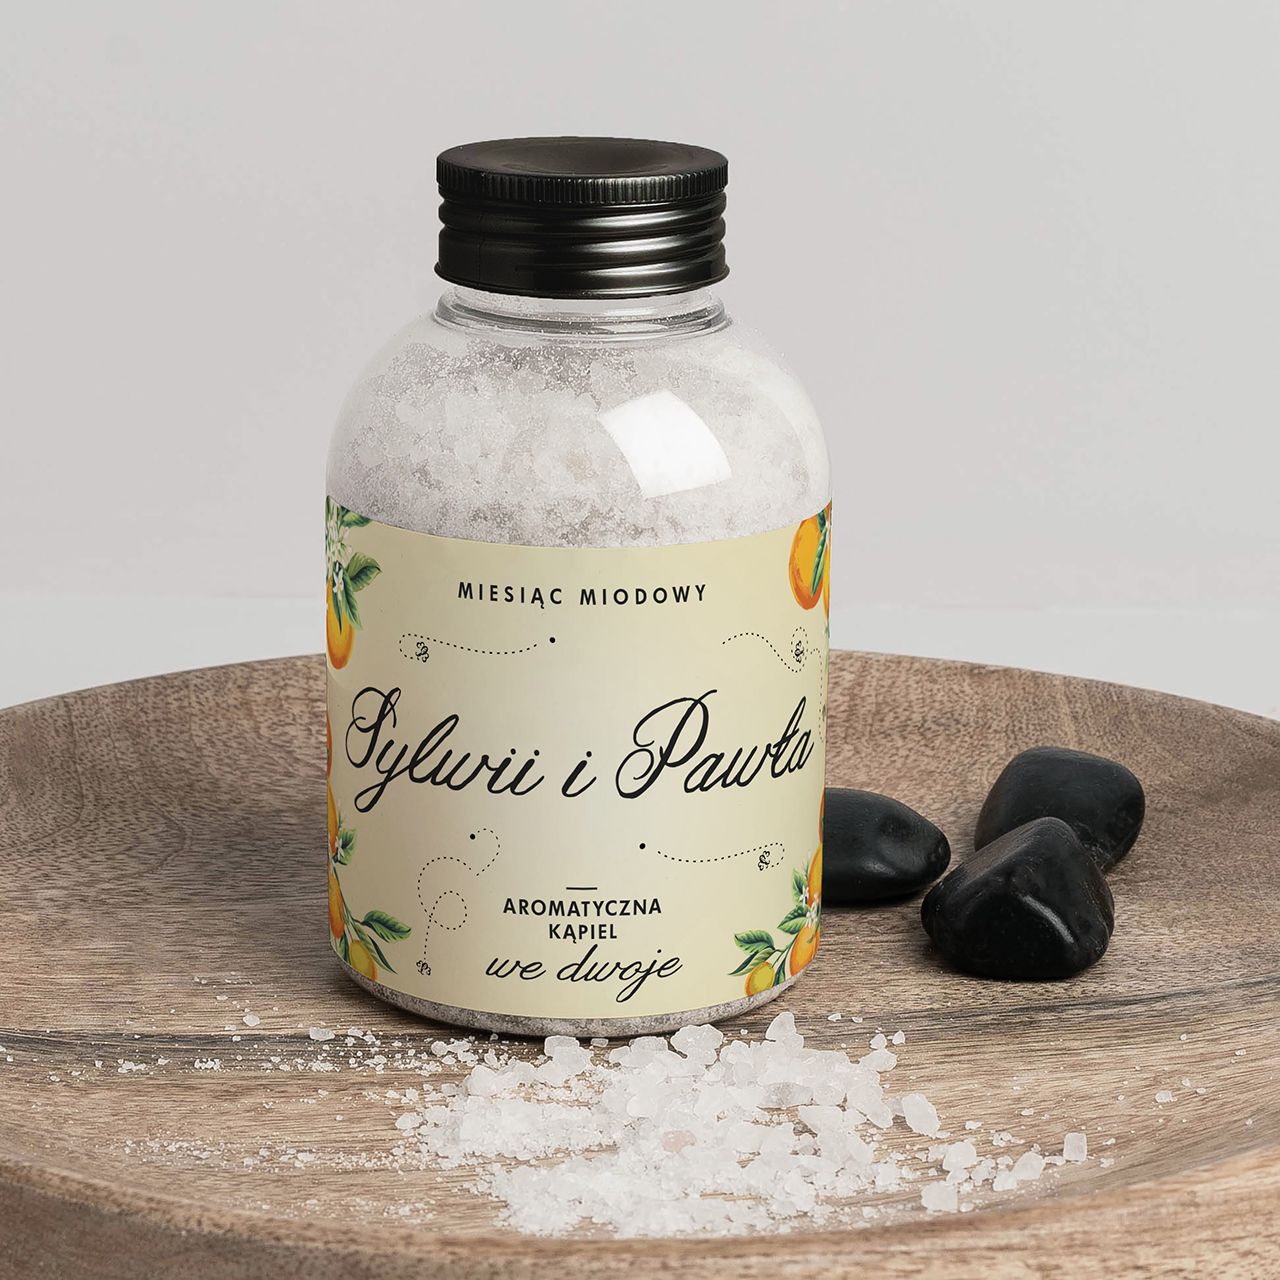 Personalizowana sól do kąpieli MIESIĄC MIODOWY upominek dla młodej pary